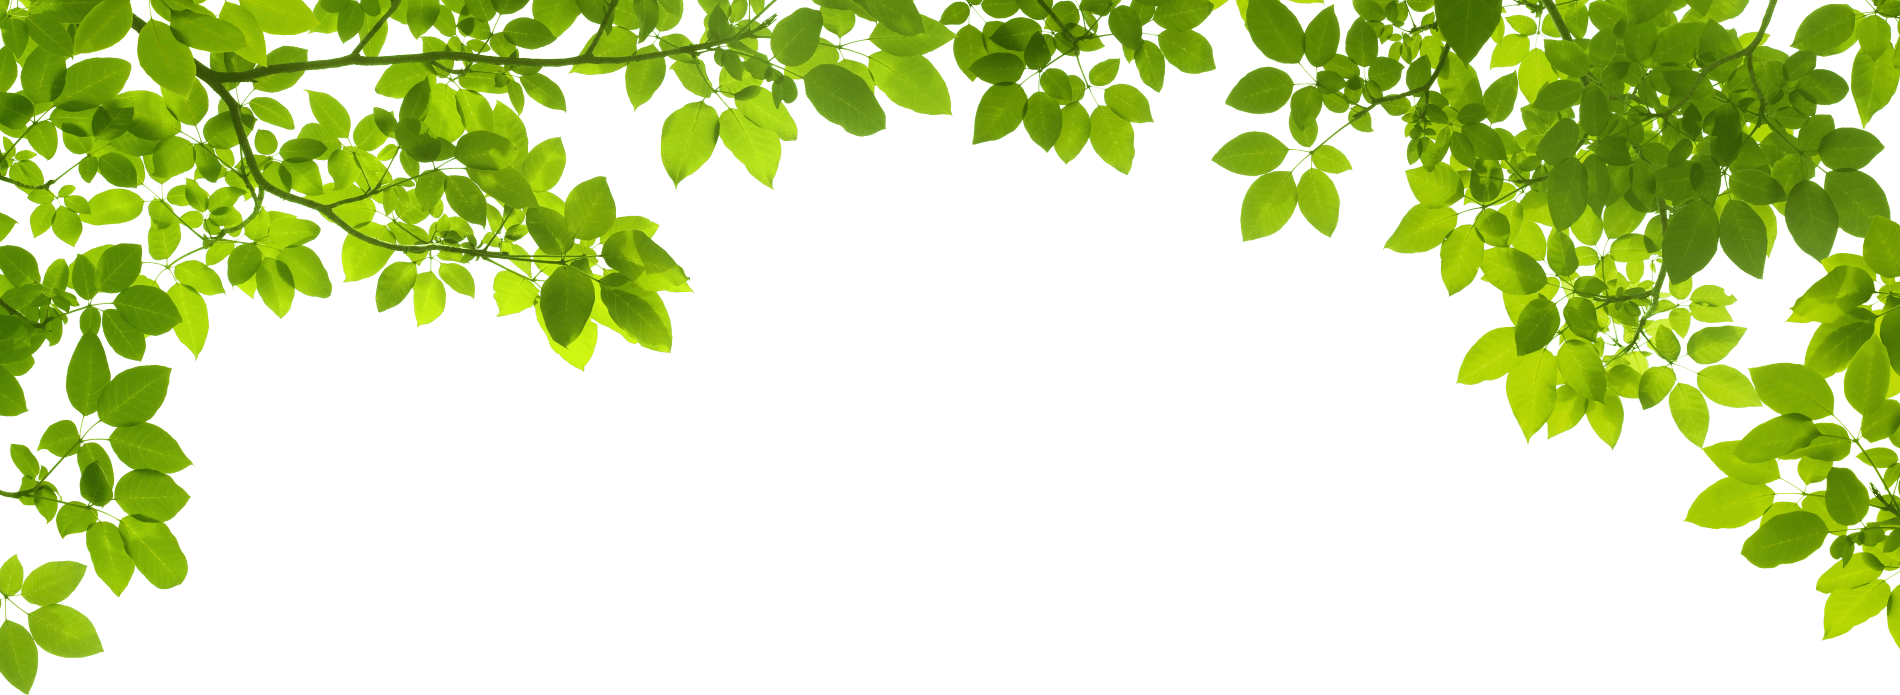 Green Leaves Border Design